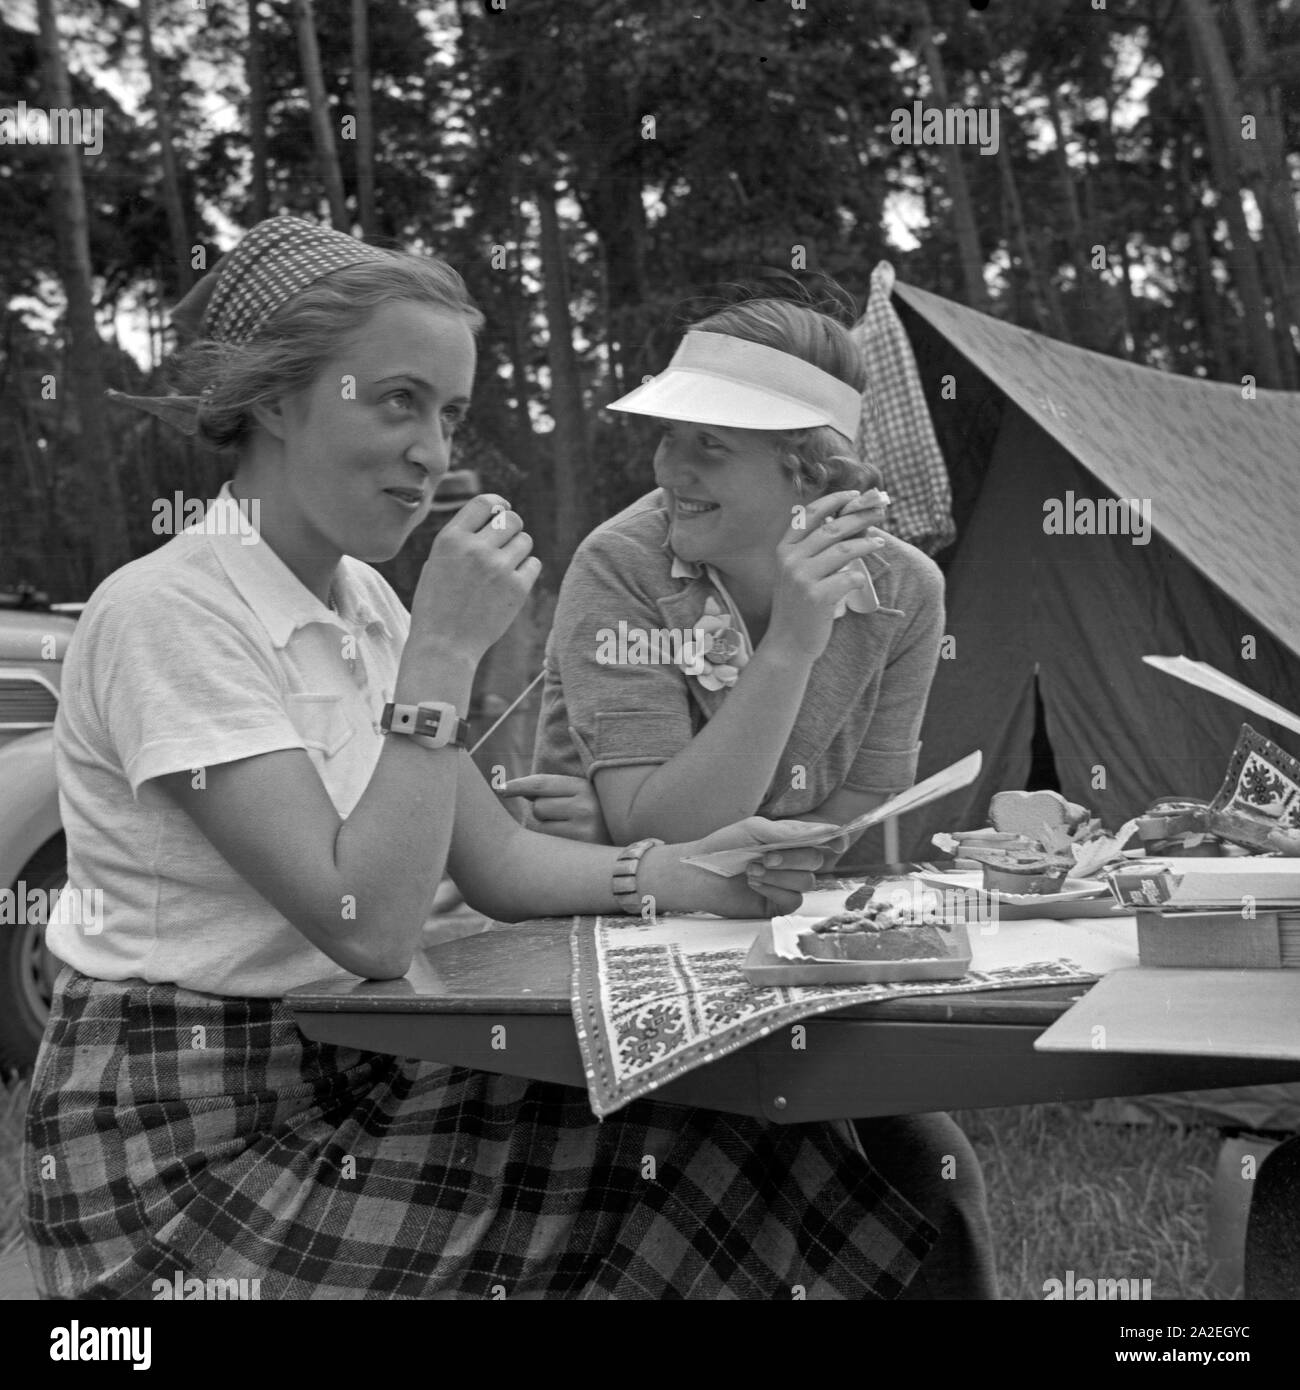 Zwei junge Frauen sitzen und essen an einem Klapptisch, Deutschland 1930er Jahre. Two young women sitting an eating at a folding table, Germany 1930s. Stock Photo